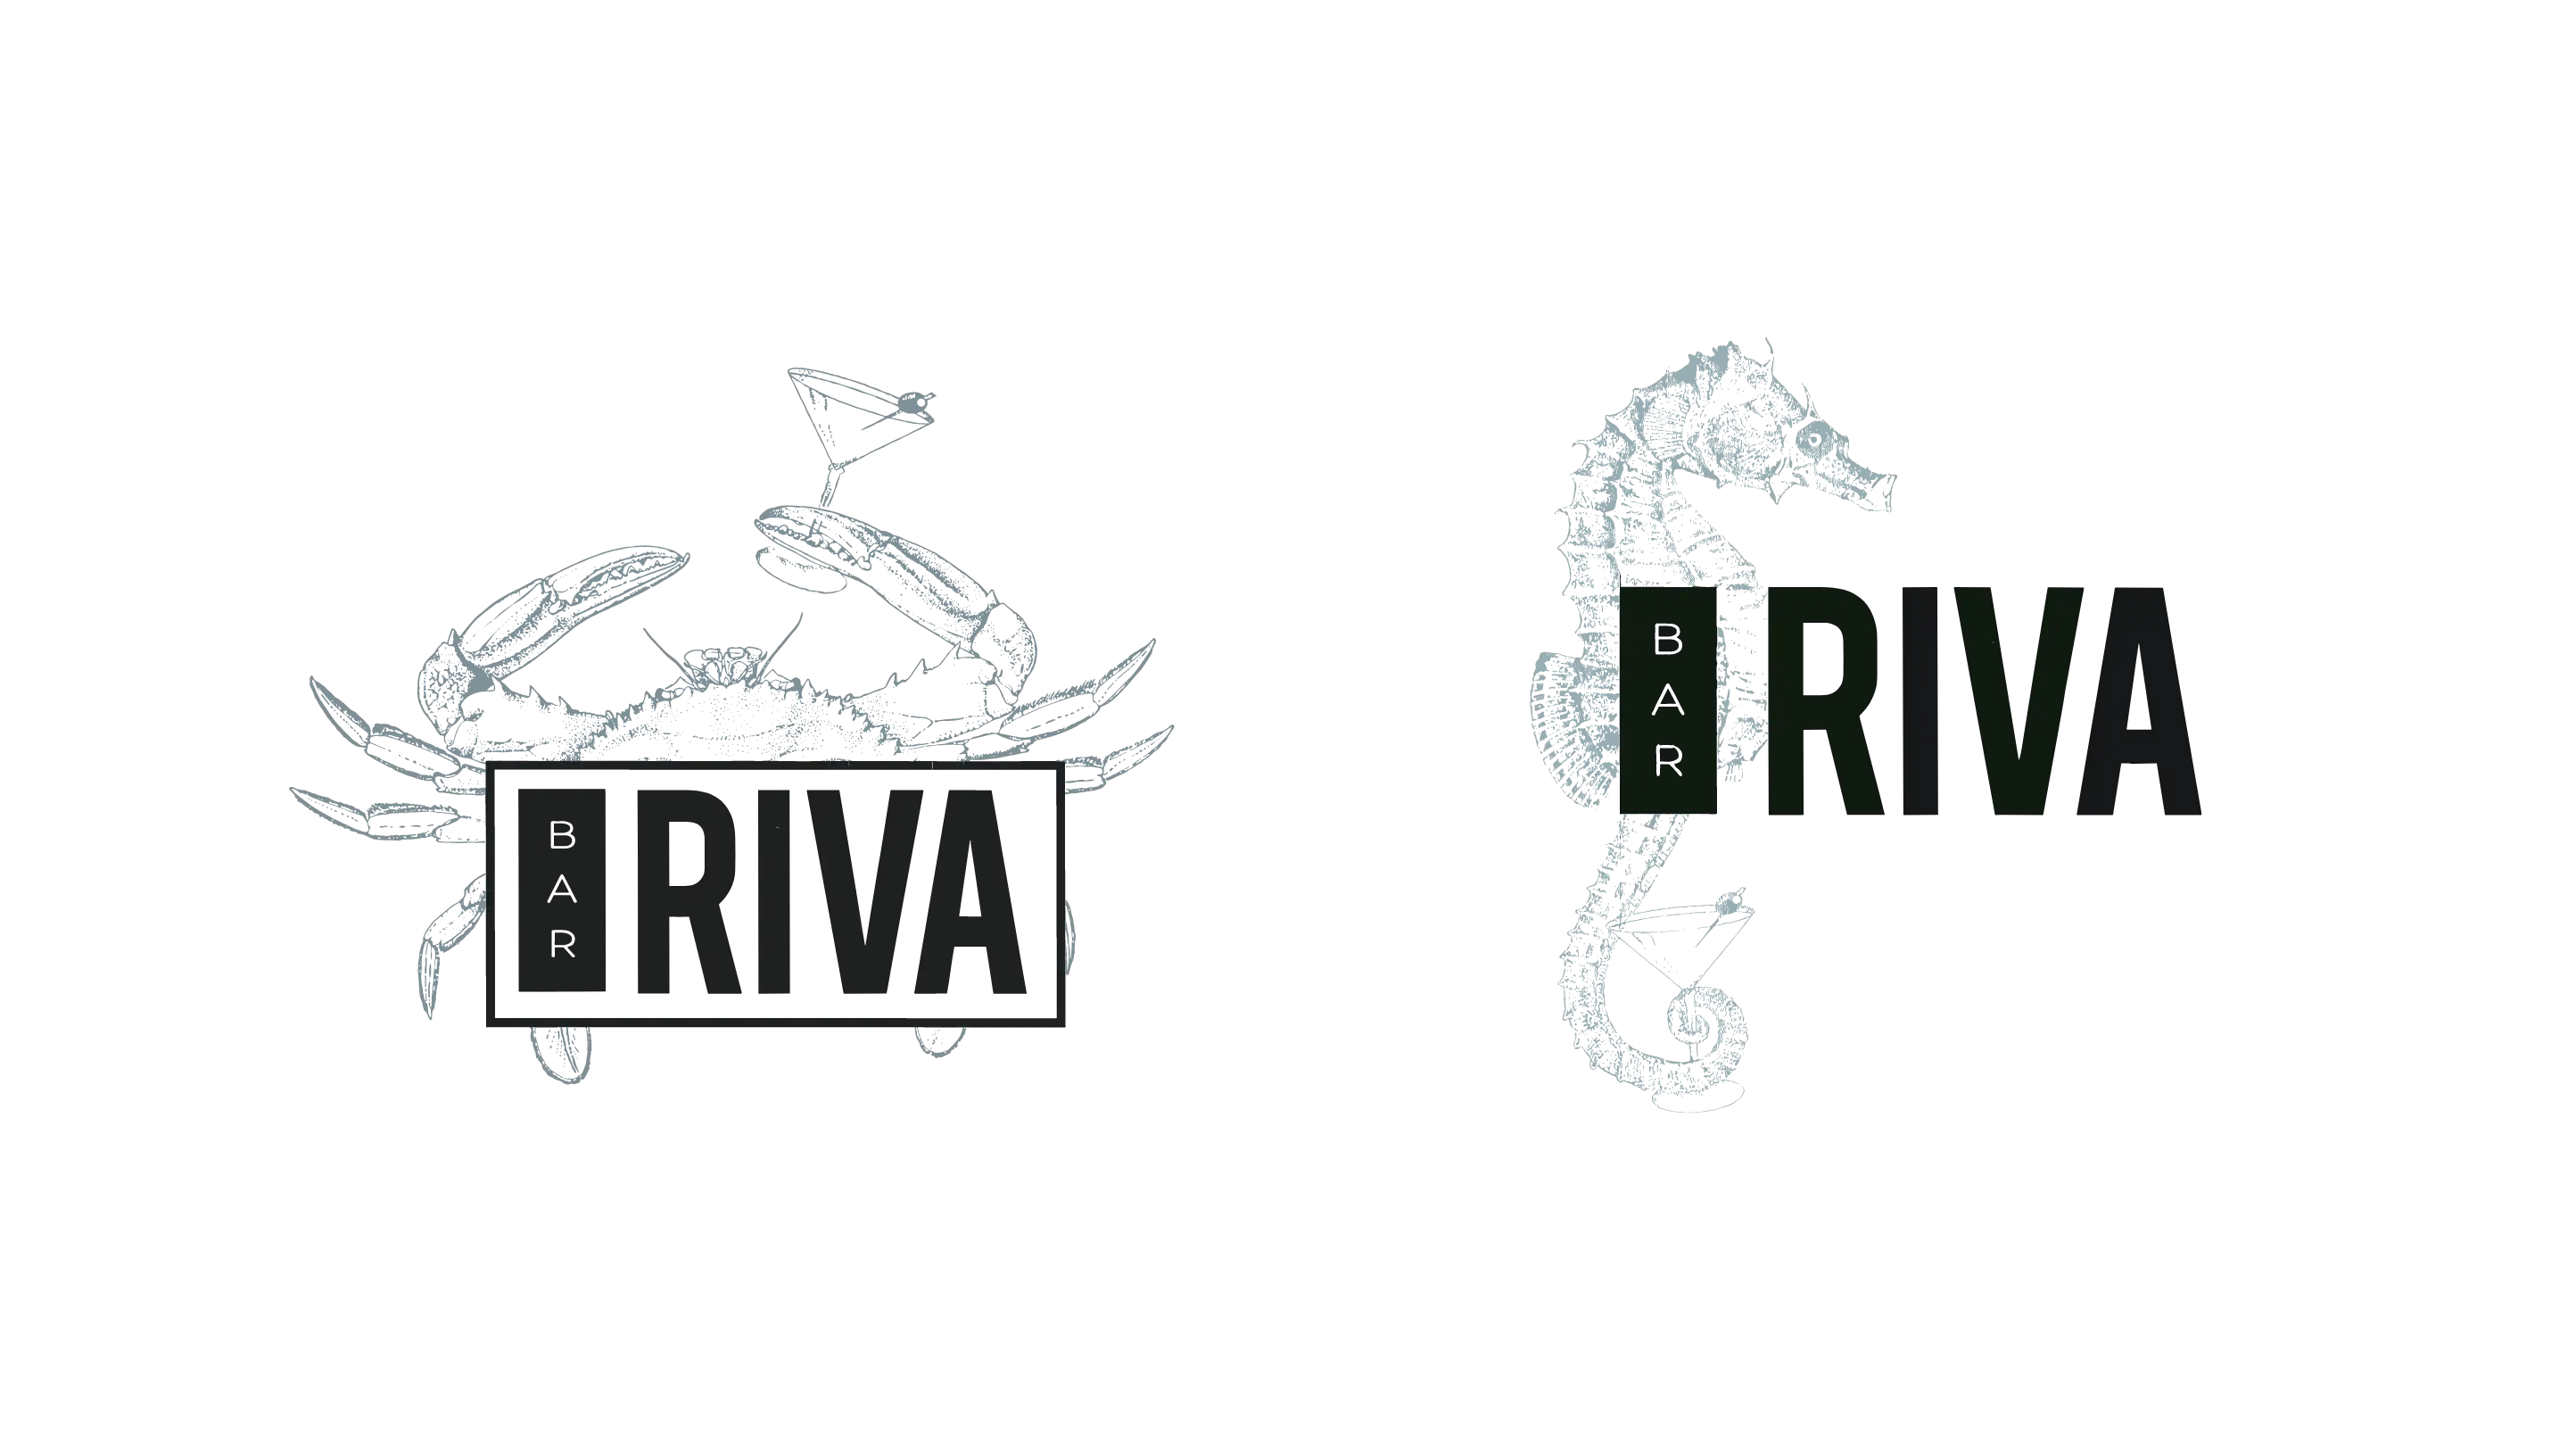 Bar Riva crab and shrimp cocktail bar logo alternates